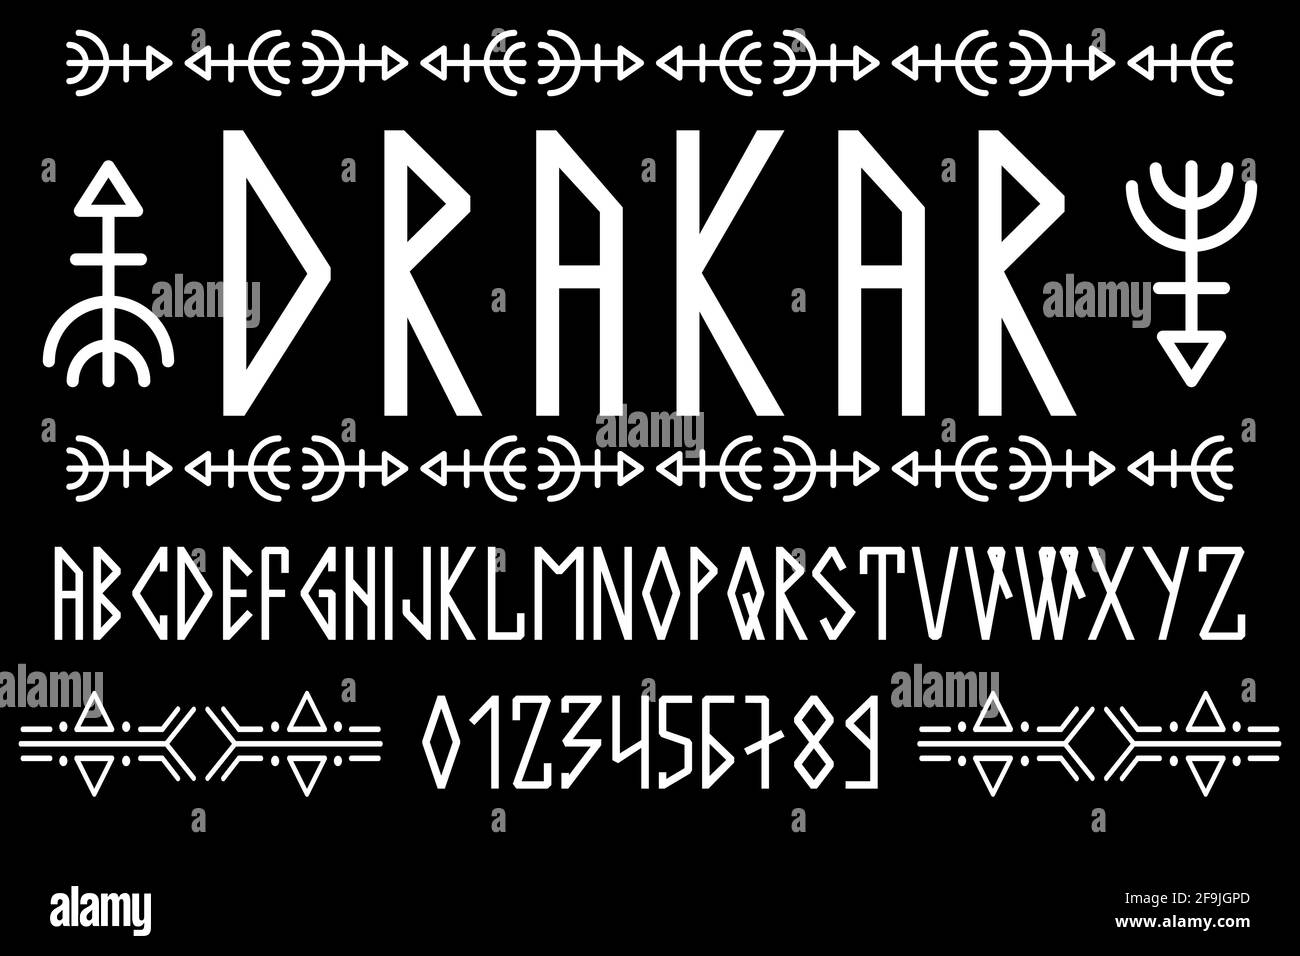 Texte scandinave, en majuscules dans le style des runes nordiques. Design moderne. Une police de rune magique dans le style ethnique des peuples du Nord Illustration de Vecteur